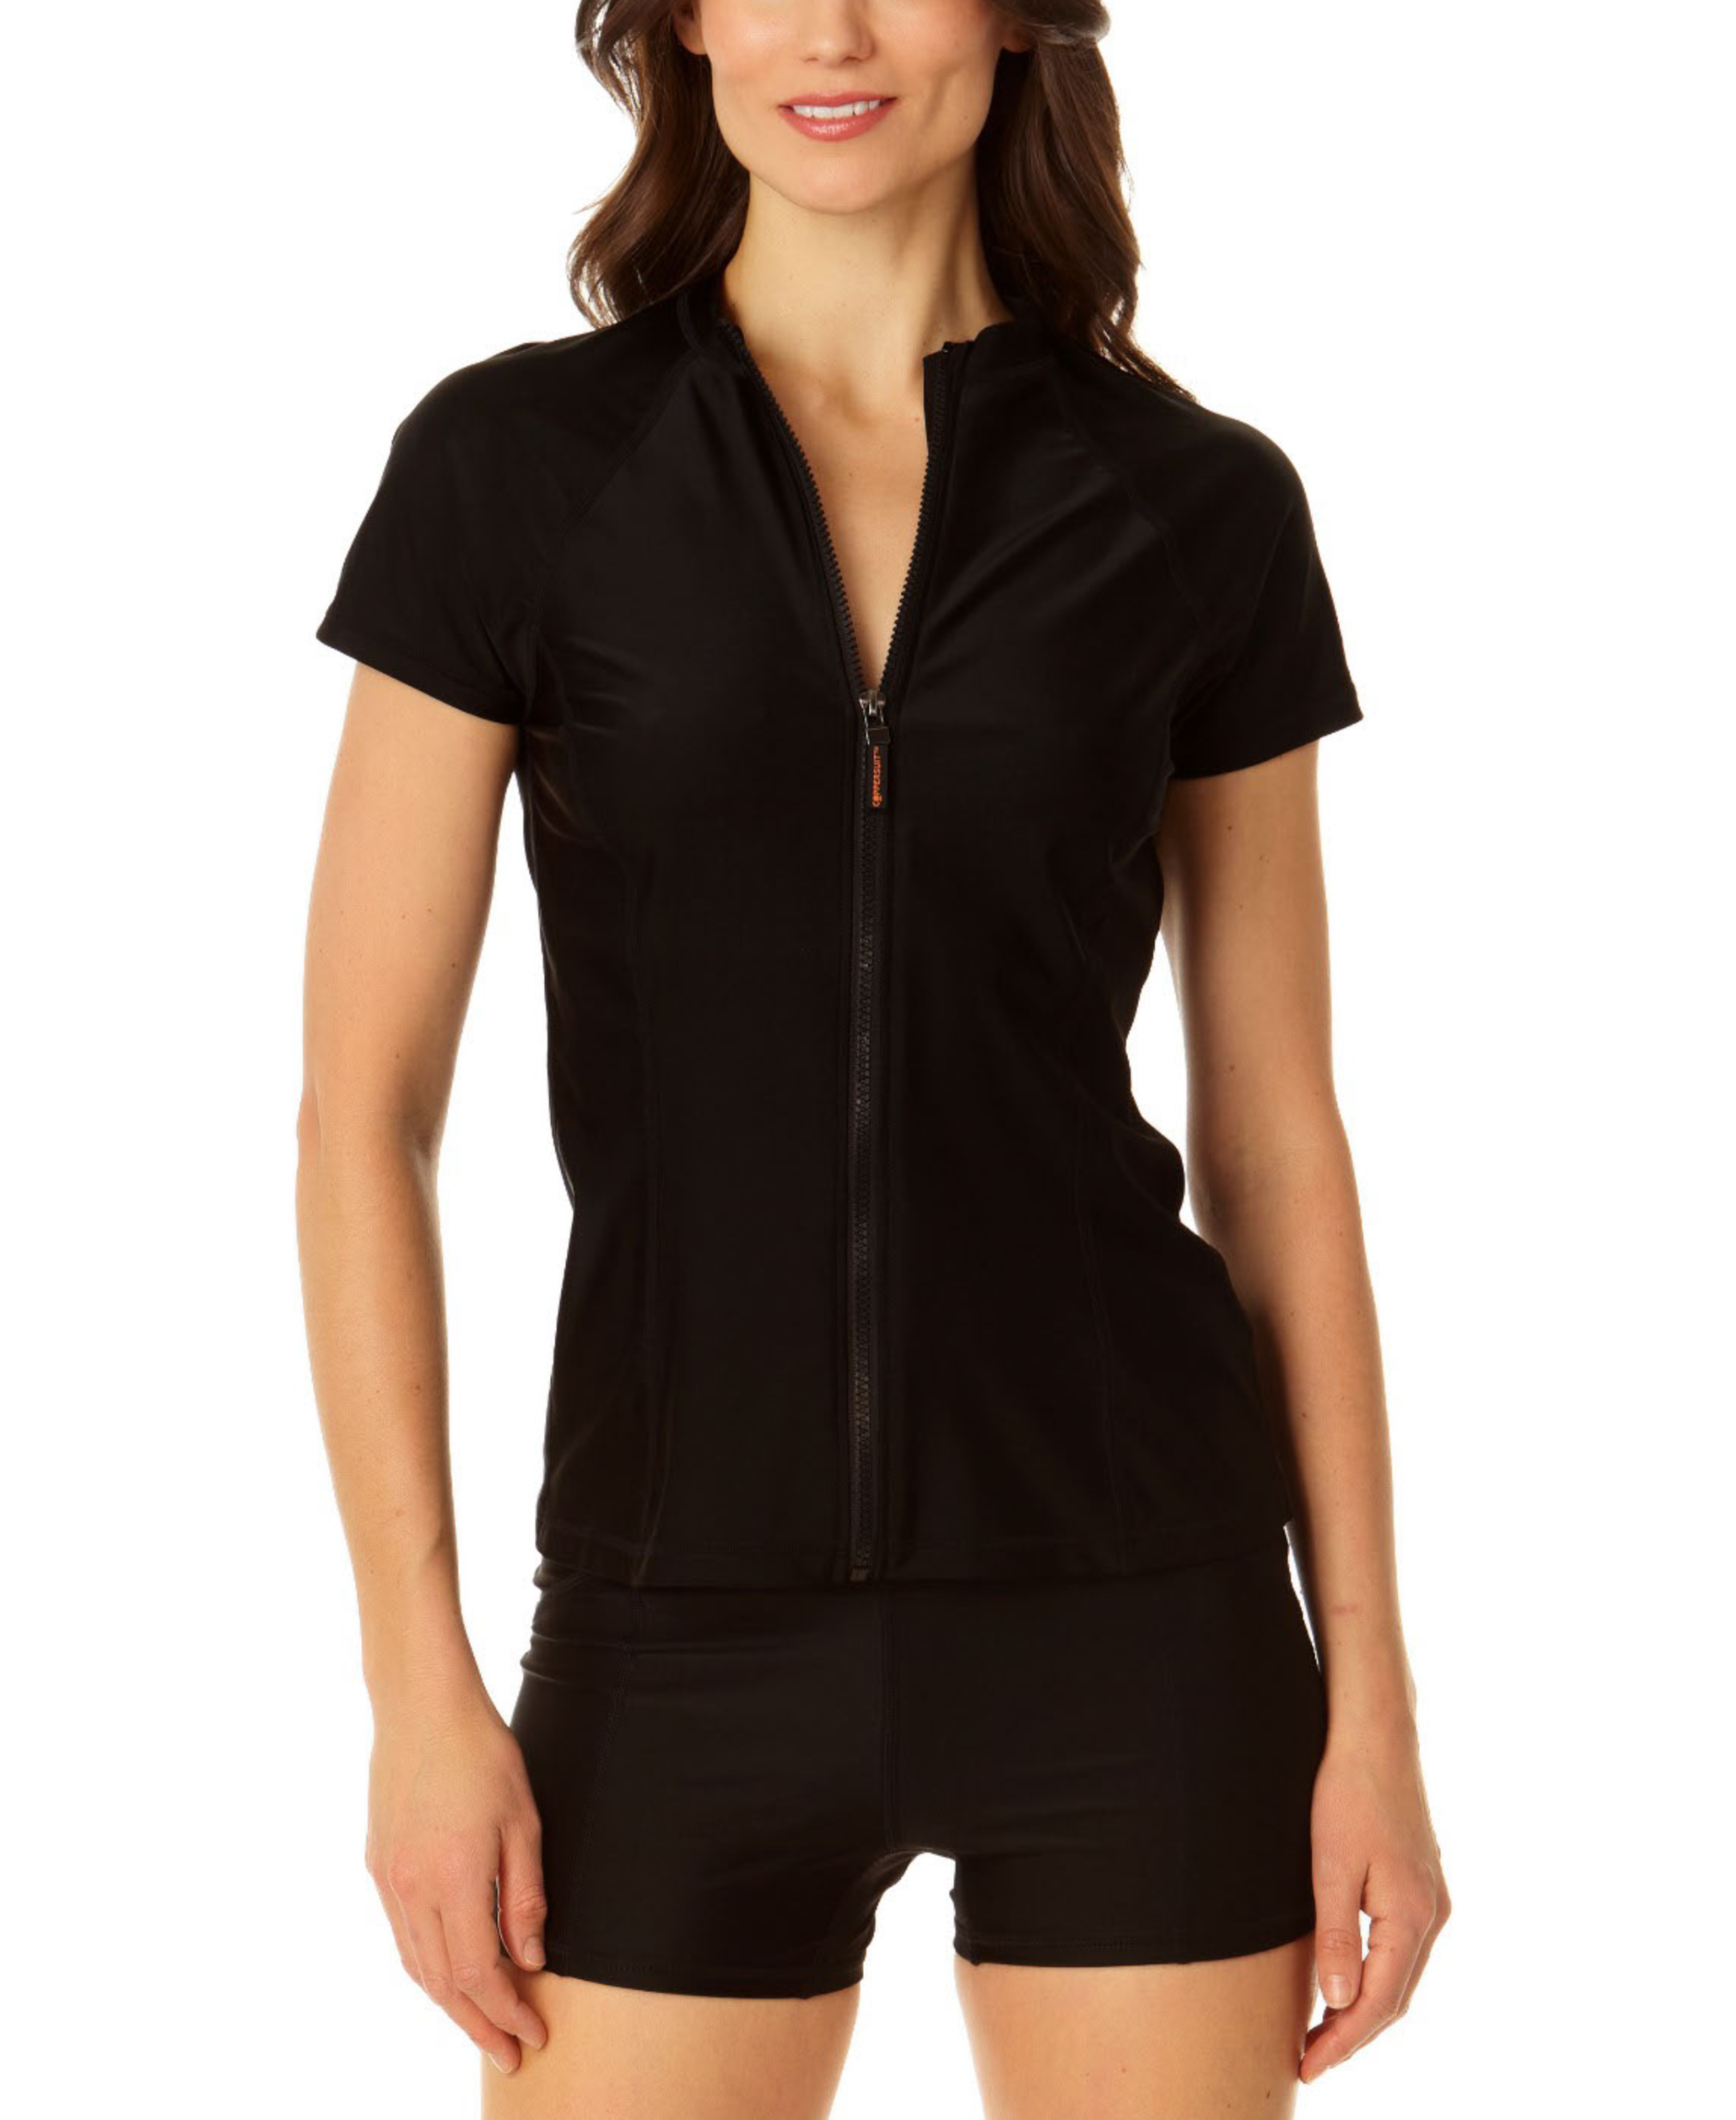 Coppersuit - Women's Short Sleeve Zip Front Rashguard Top